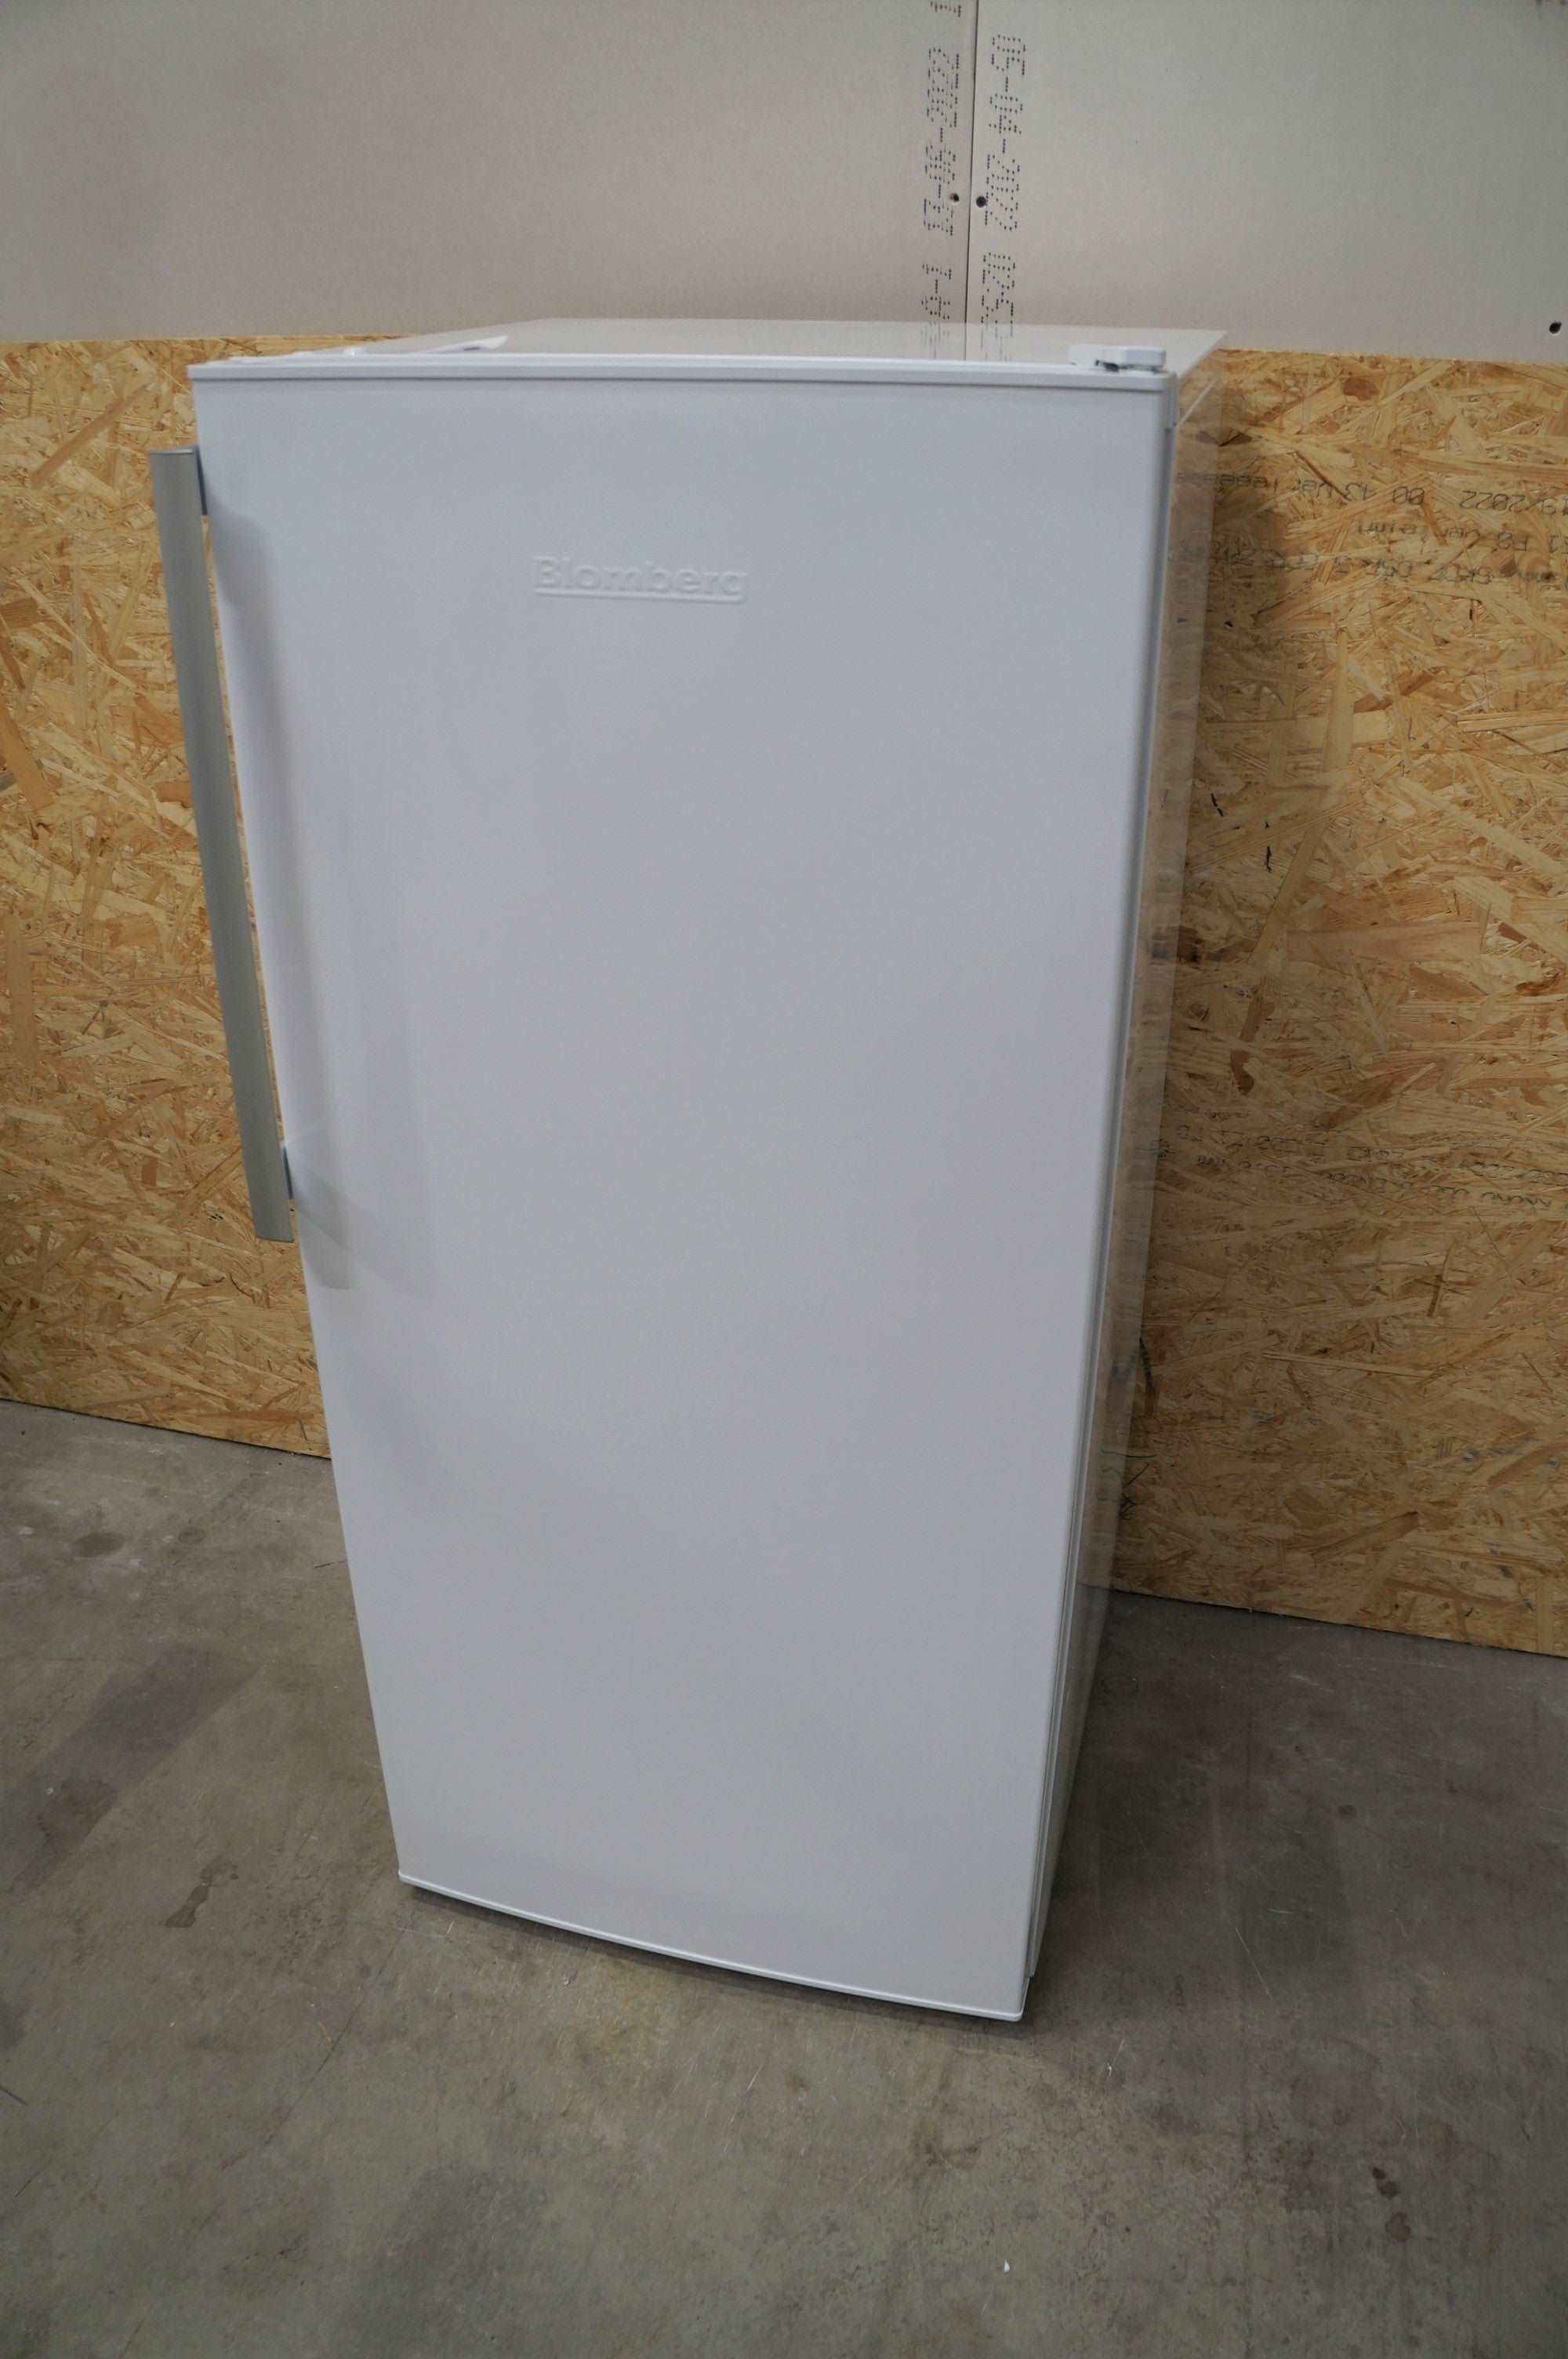 Blomberg køleskab SSM4550N - D05522